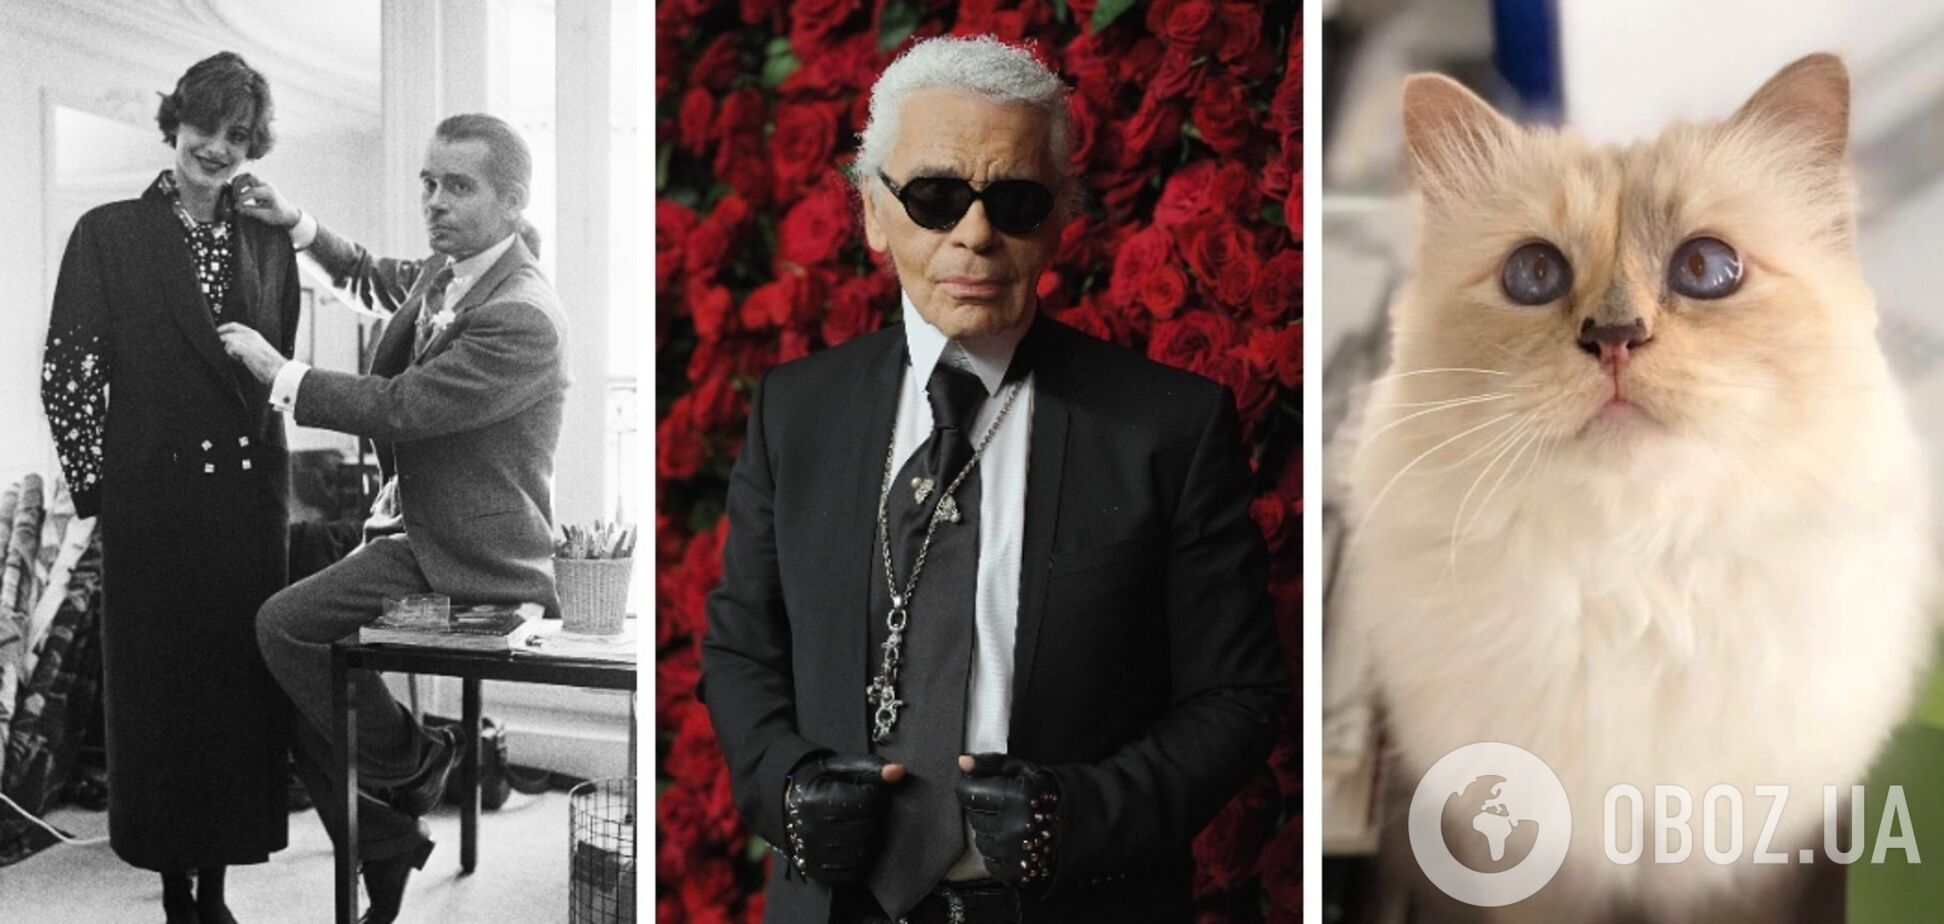 Любимый умер от СПИДа, а он хотел жениться на кошке. 7 интересных фактов о легенде мира моды Карла Лагерфельда